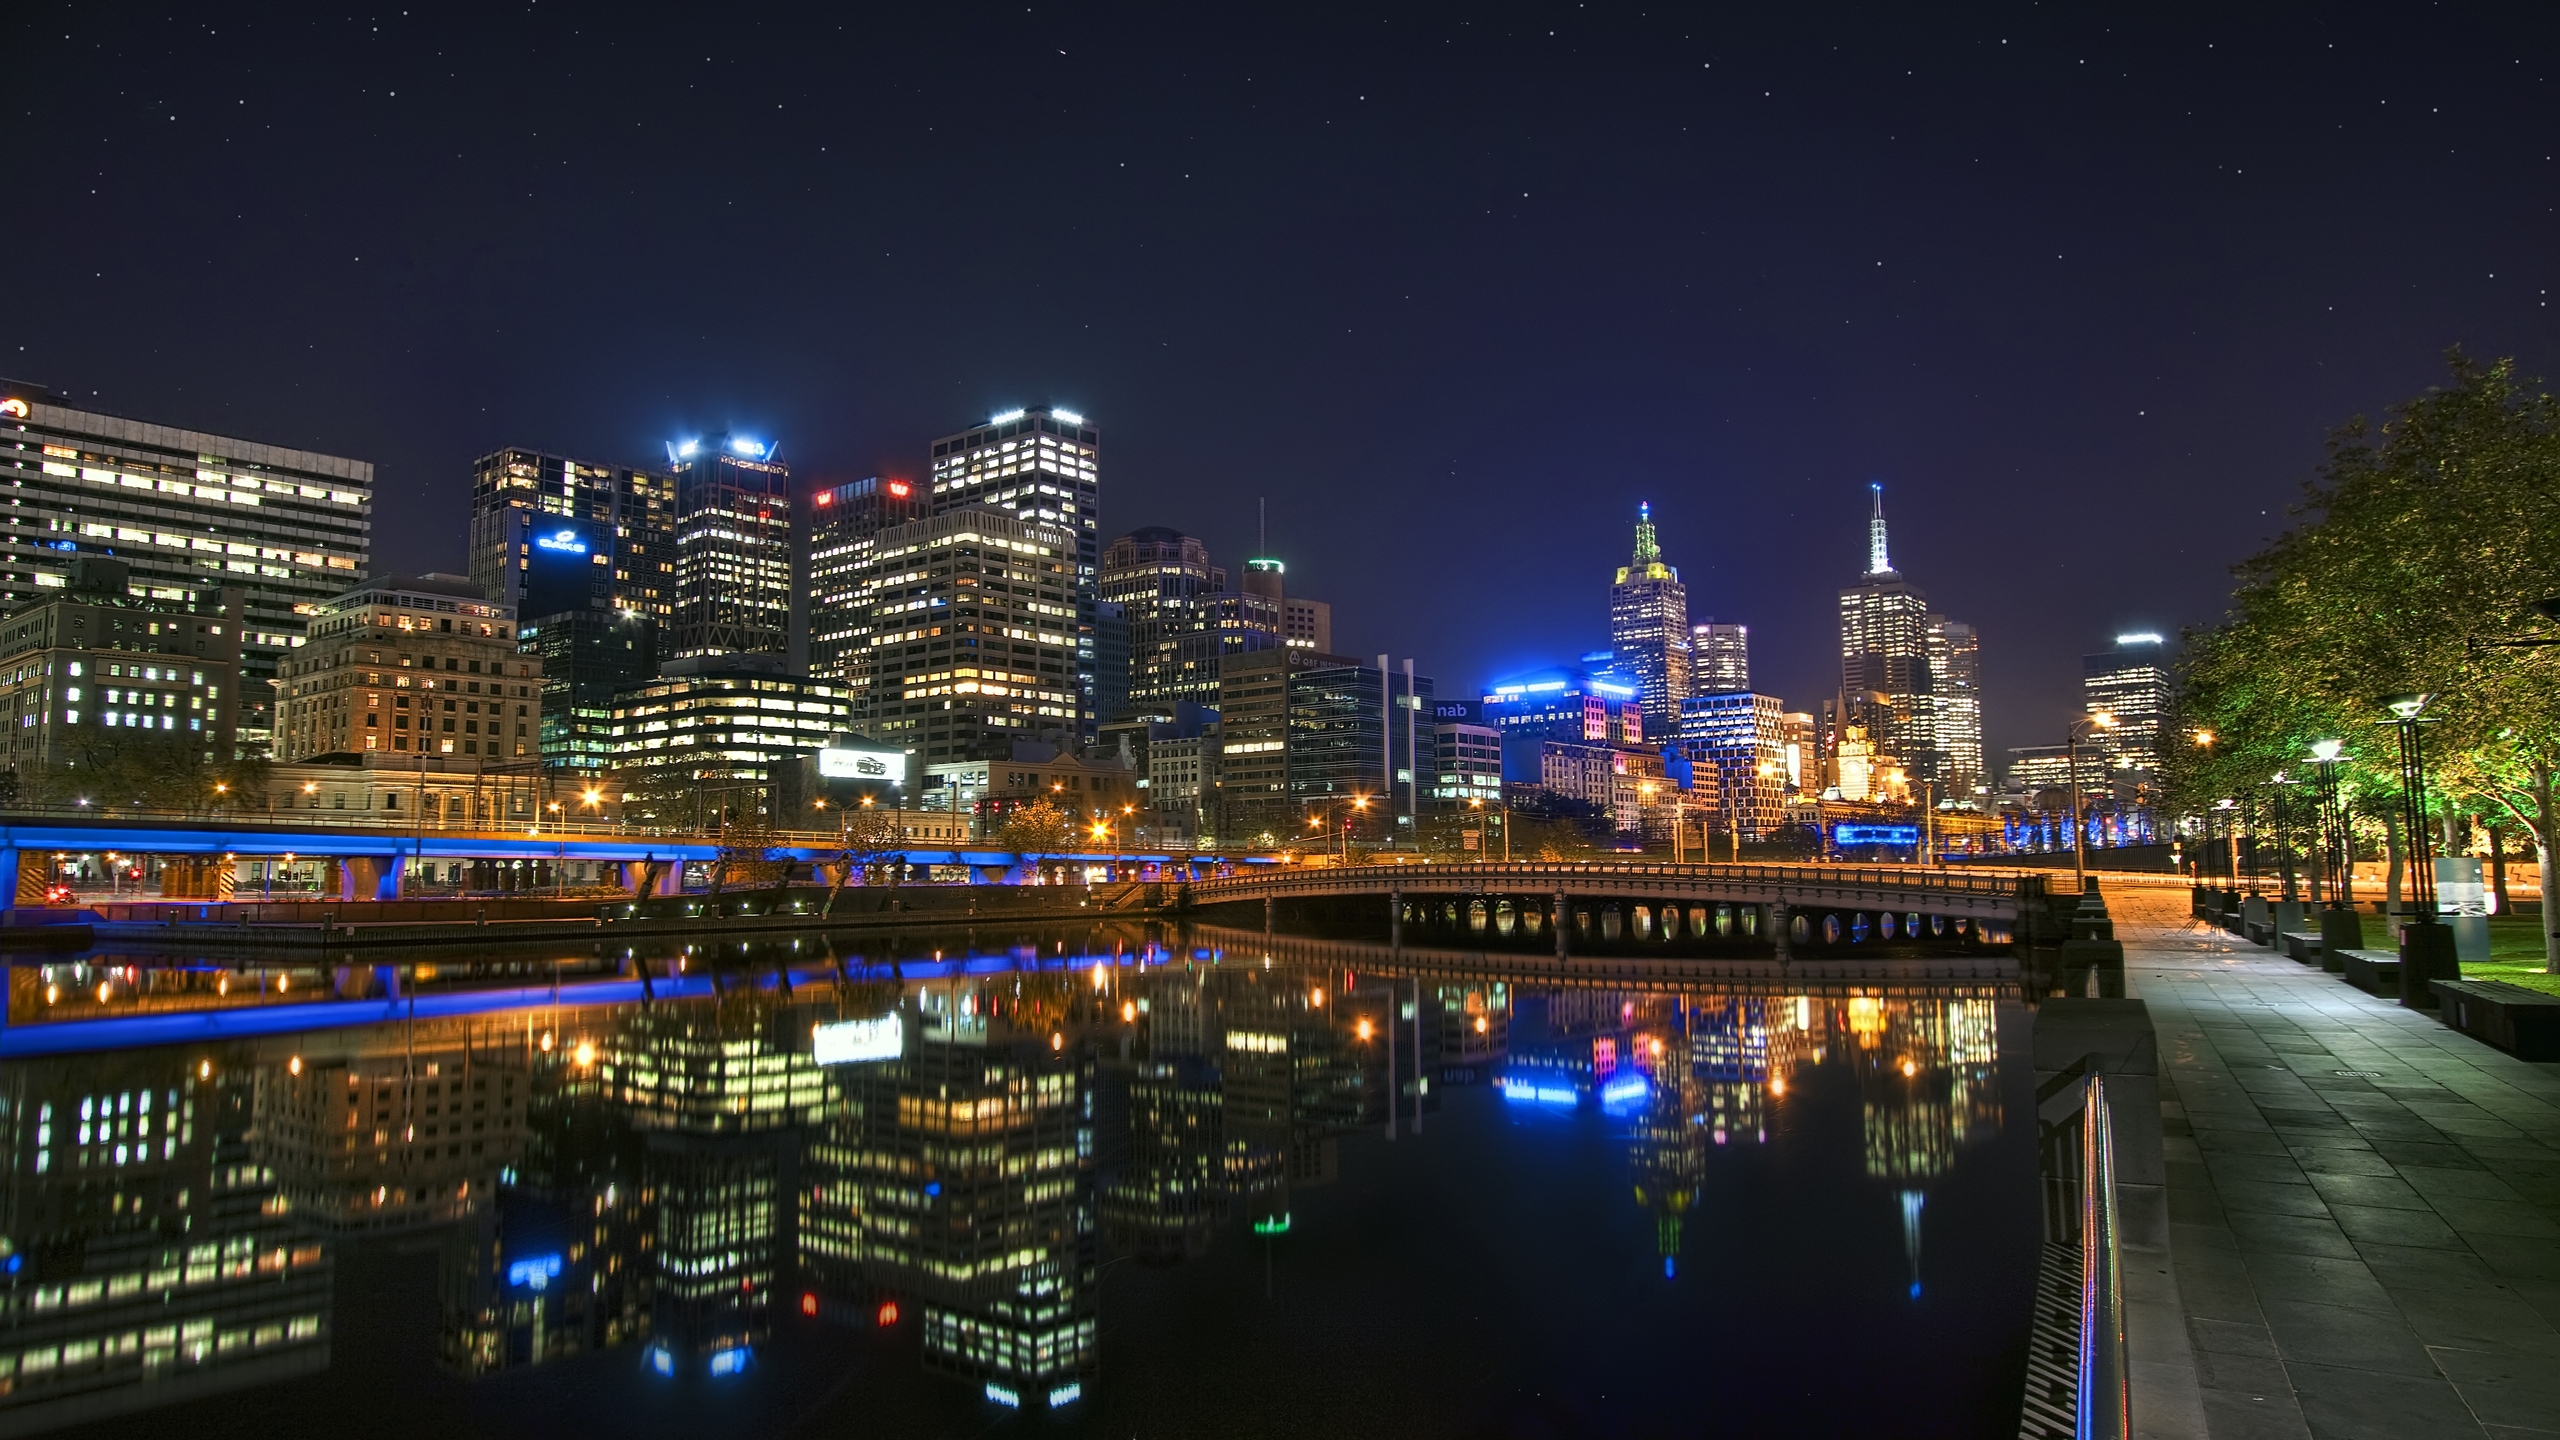 Melbourne Night Landscape for 2560x1440 HDTV resolution